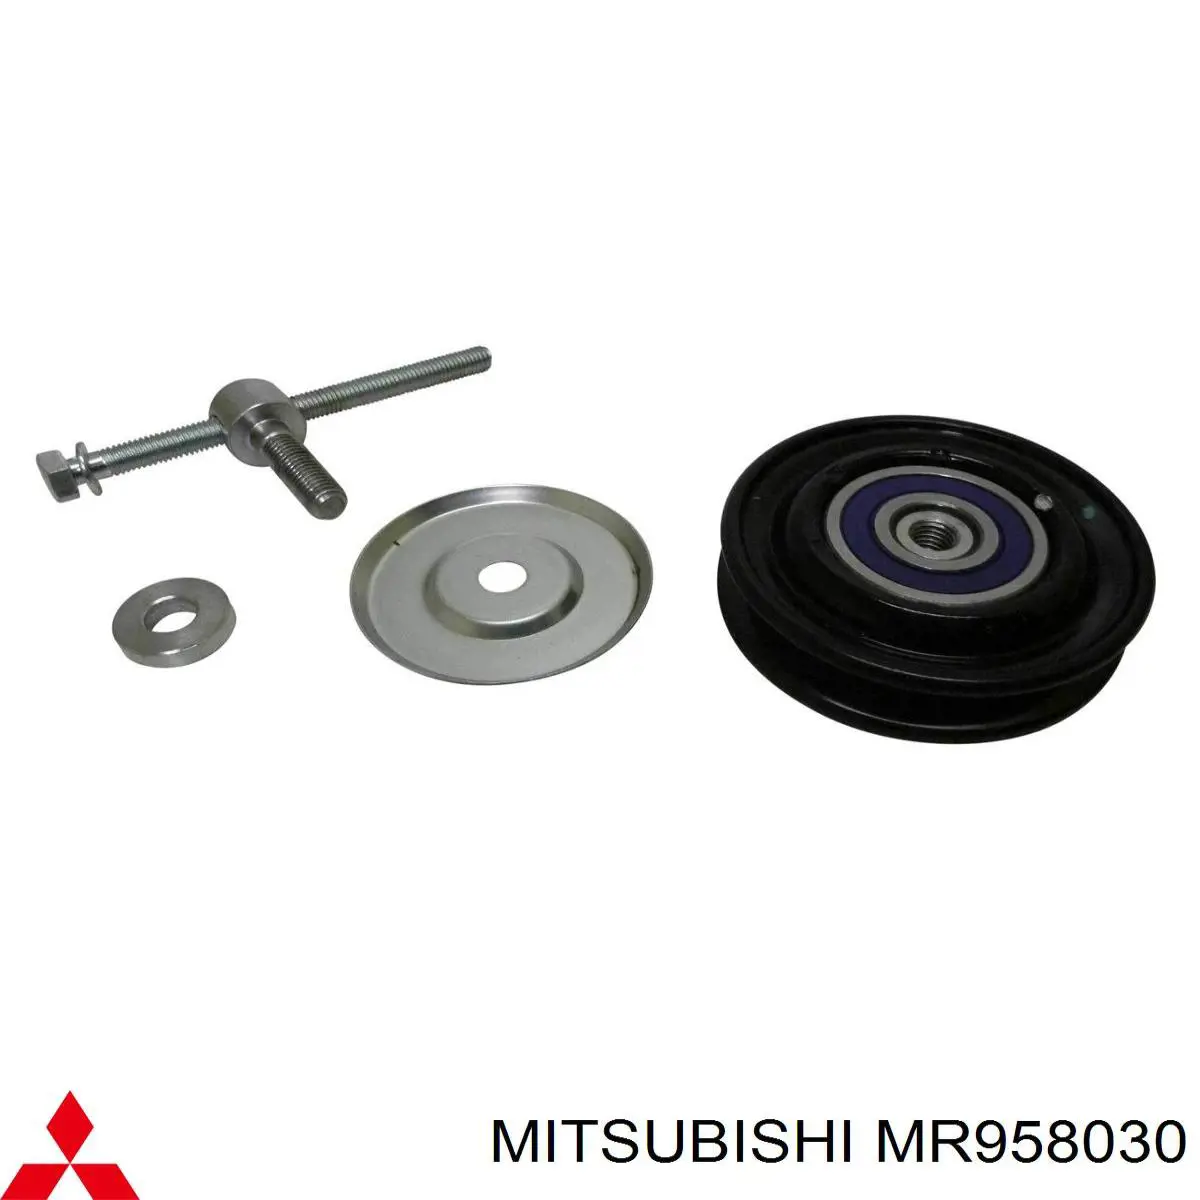 MR958030 Mitsubishi rolo de reguladora de tensão da correia de transmissão